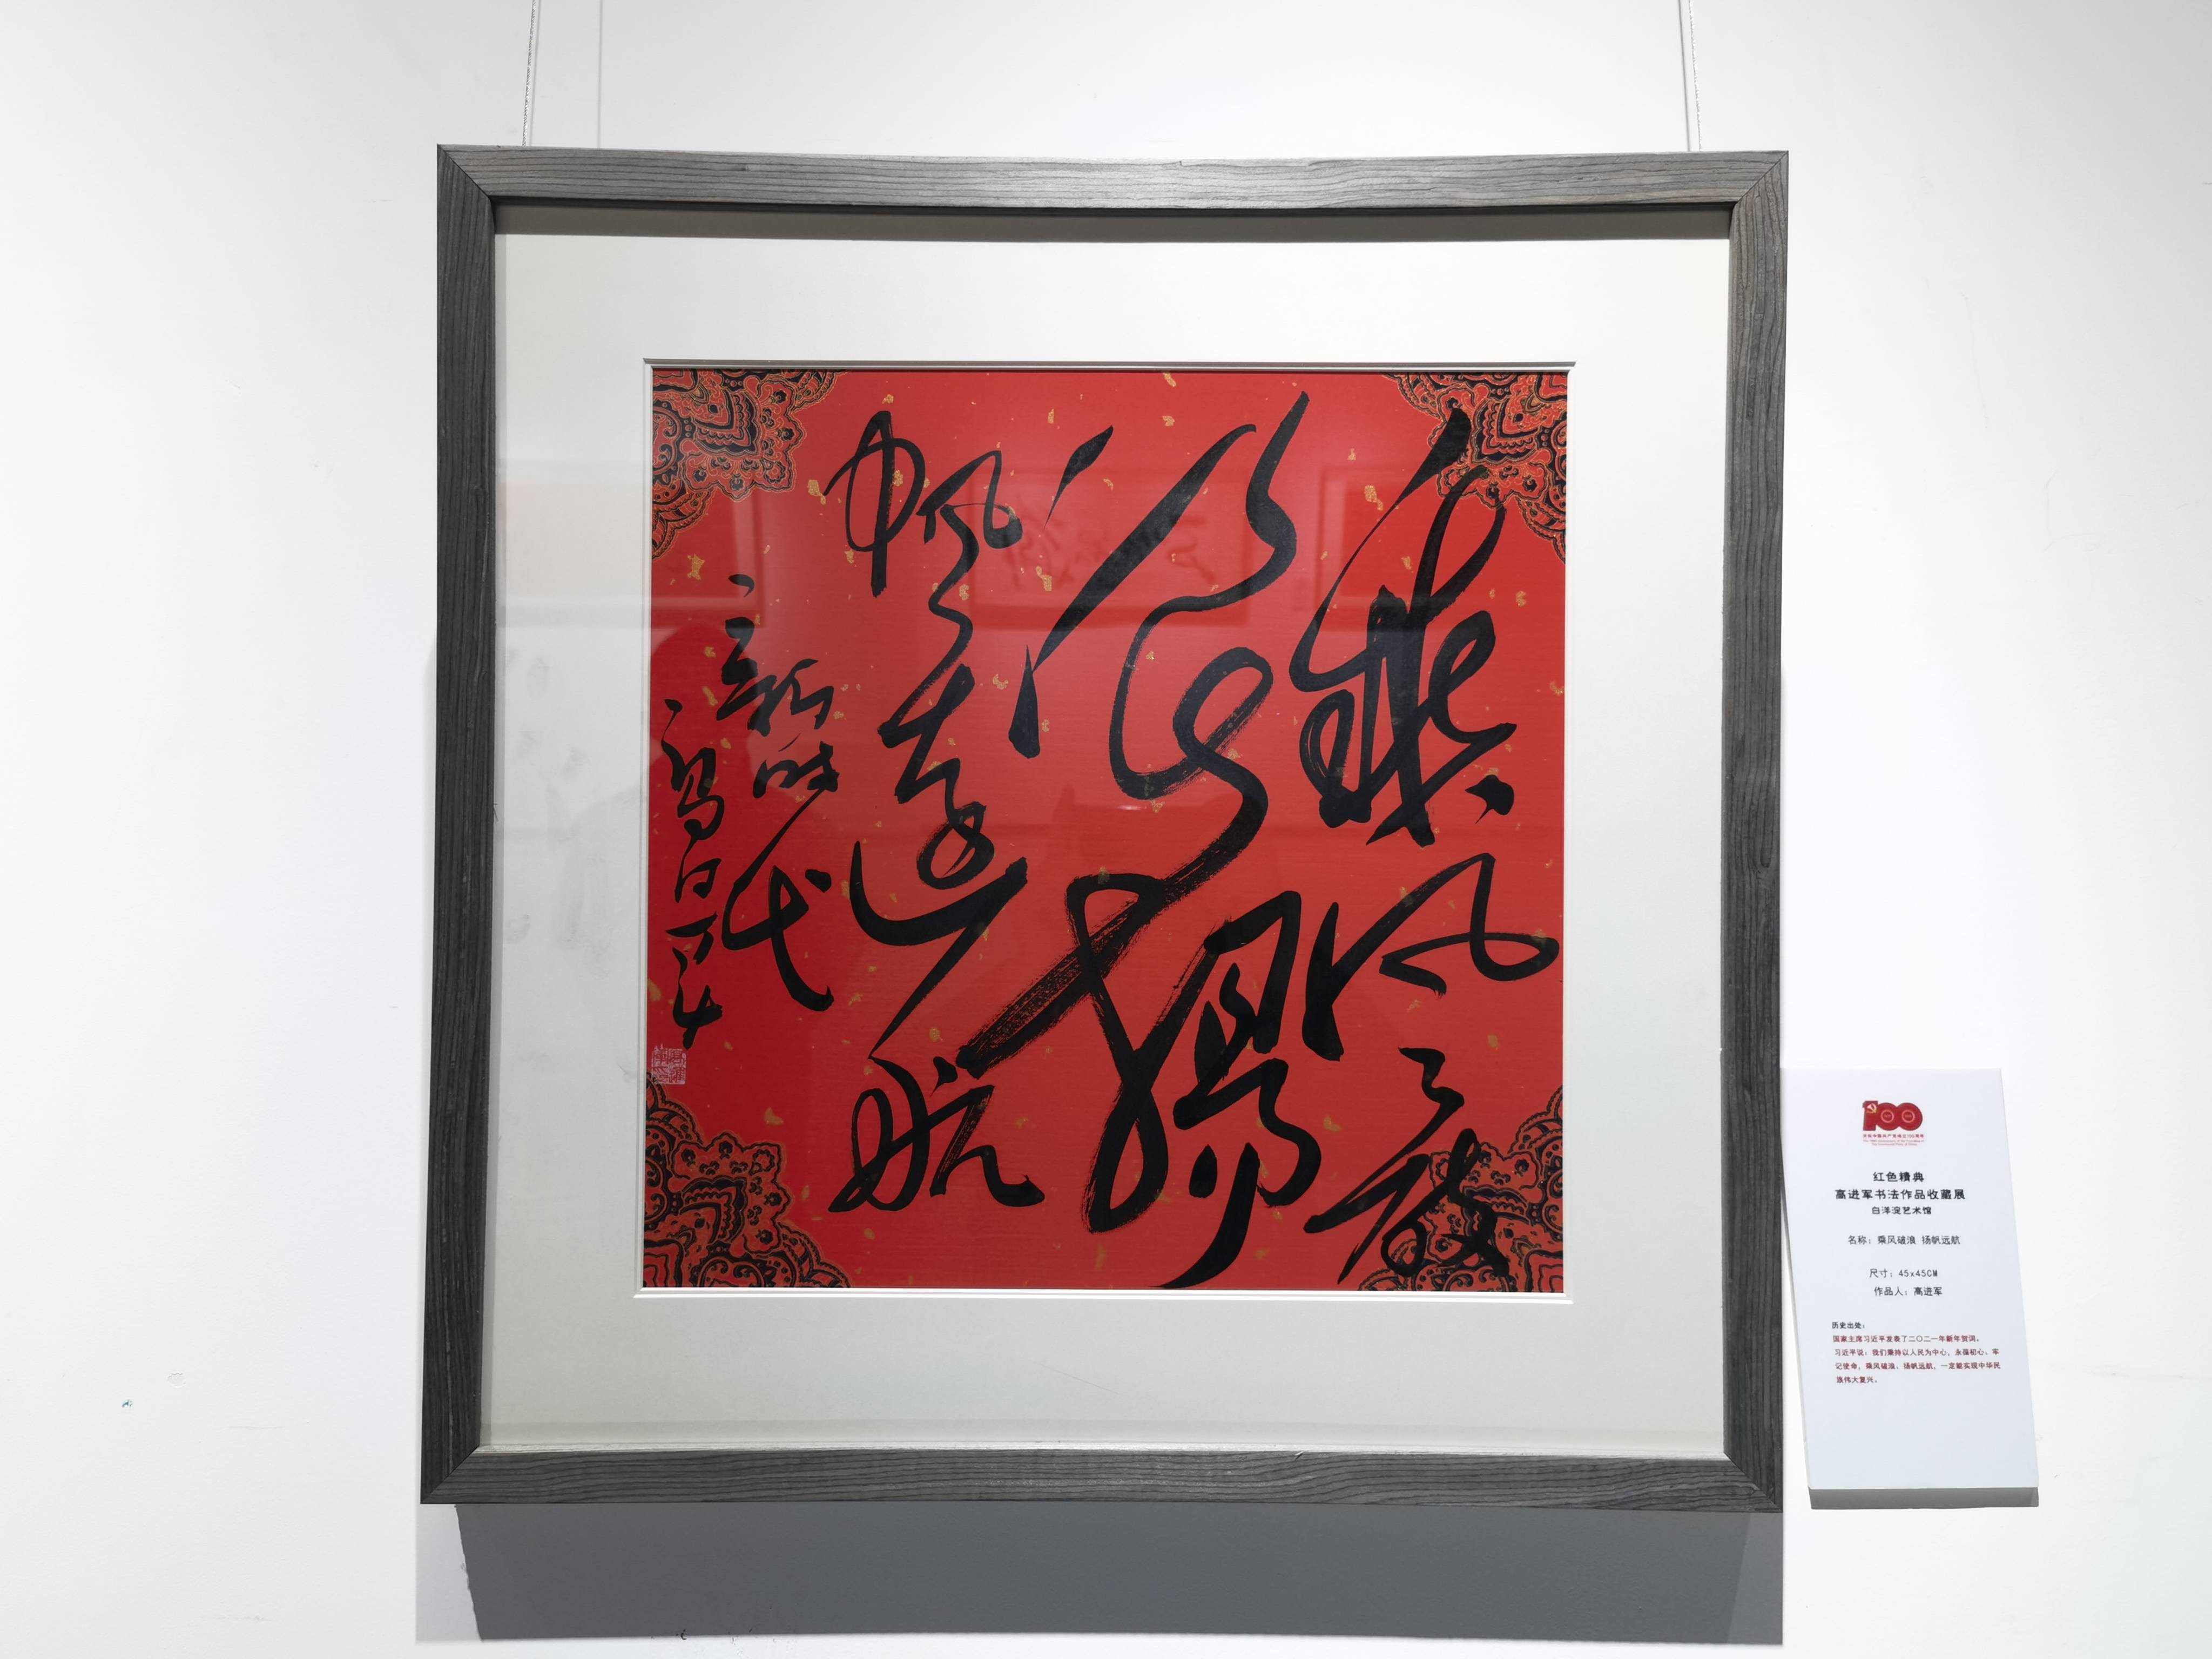 红色经典主题 高进军书法作品收藏展在白洋淀艺术馆成功举办